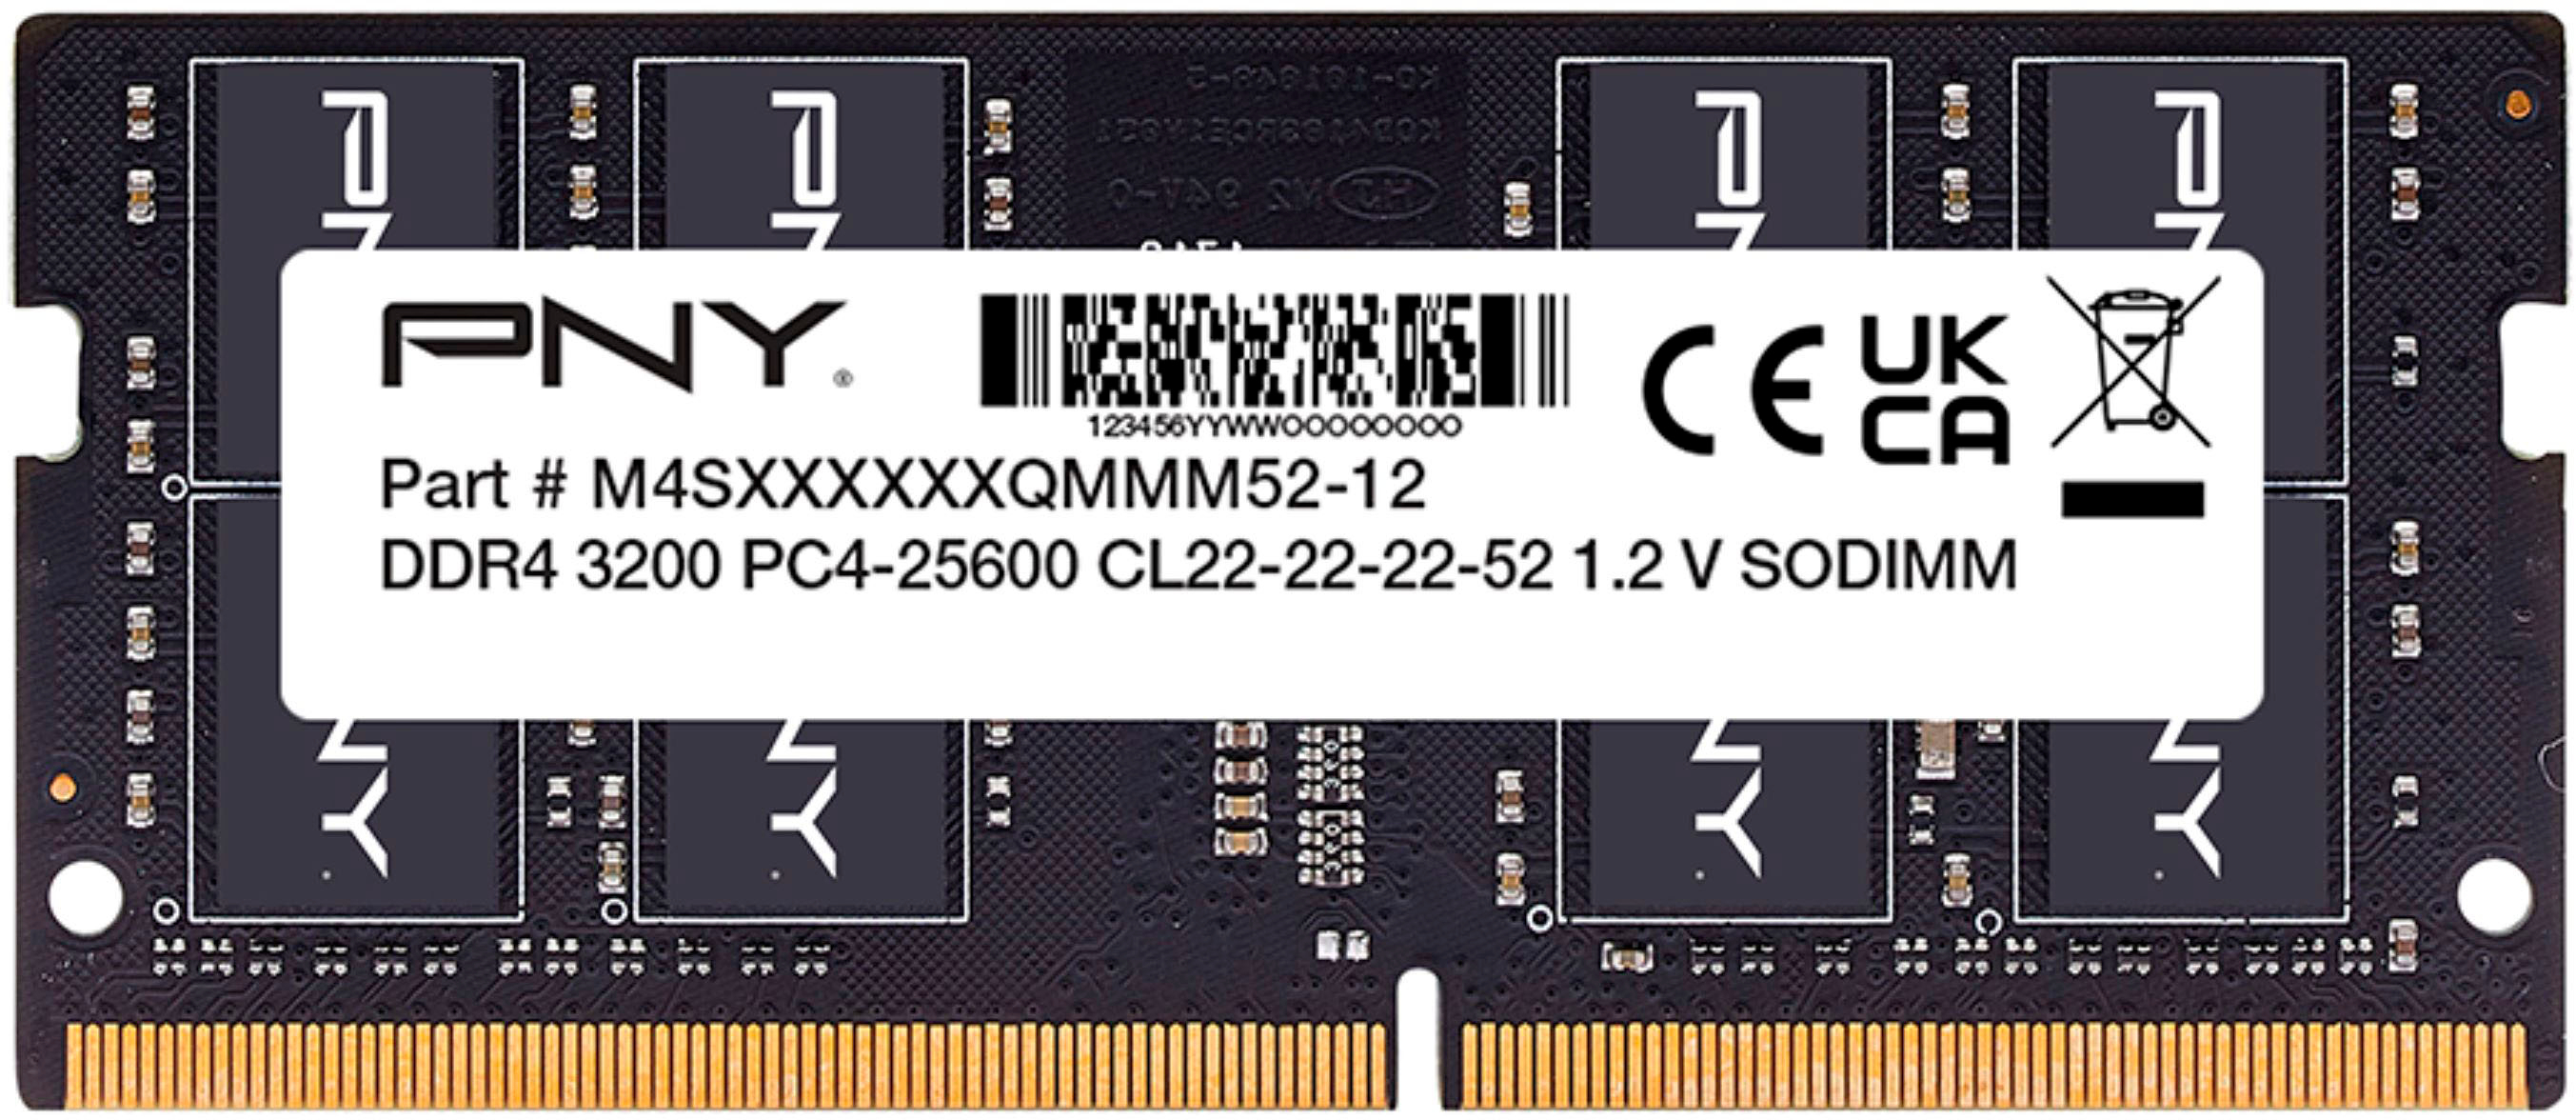 Mémoire RAM Nuimpact 8 Go (2 x 4 Go) DDR3 SODIMM 1333 MHz PC3-10600 -  Mémoire RAM - Nuimpact